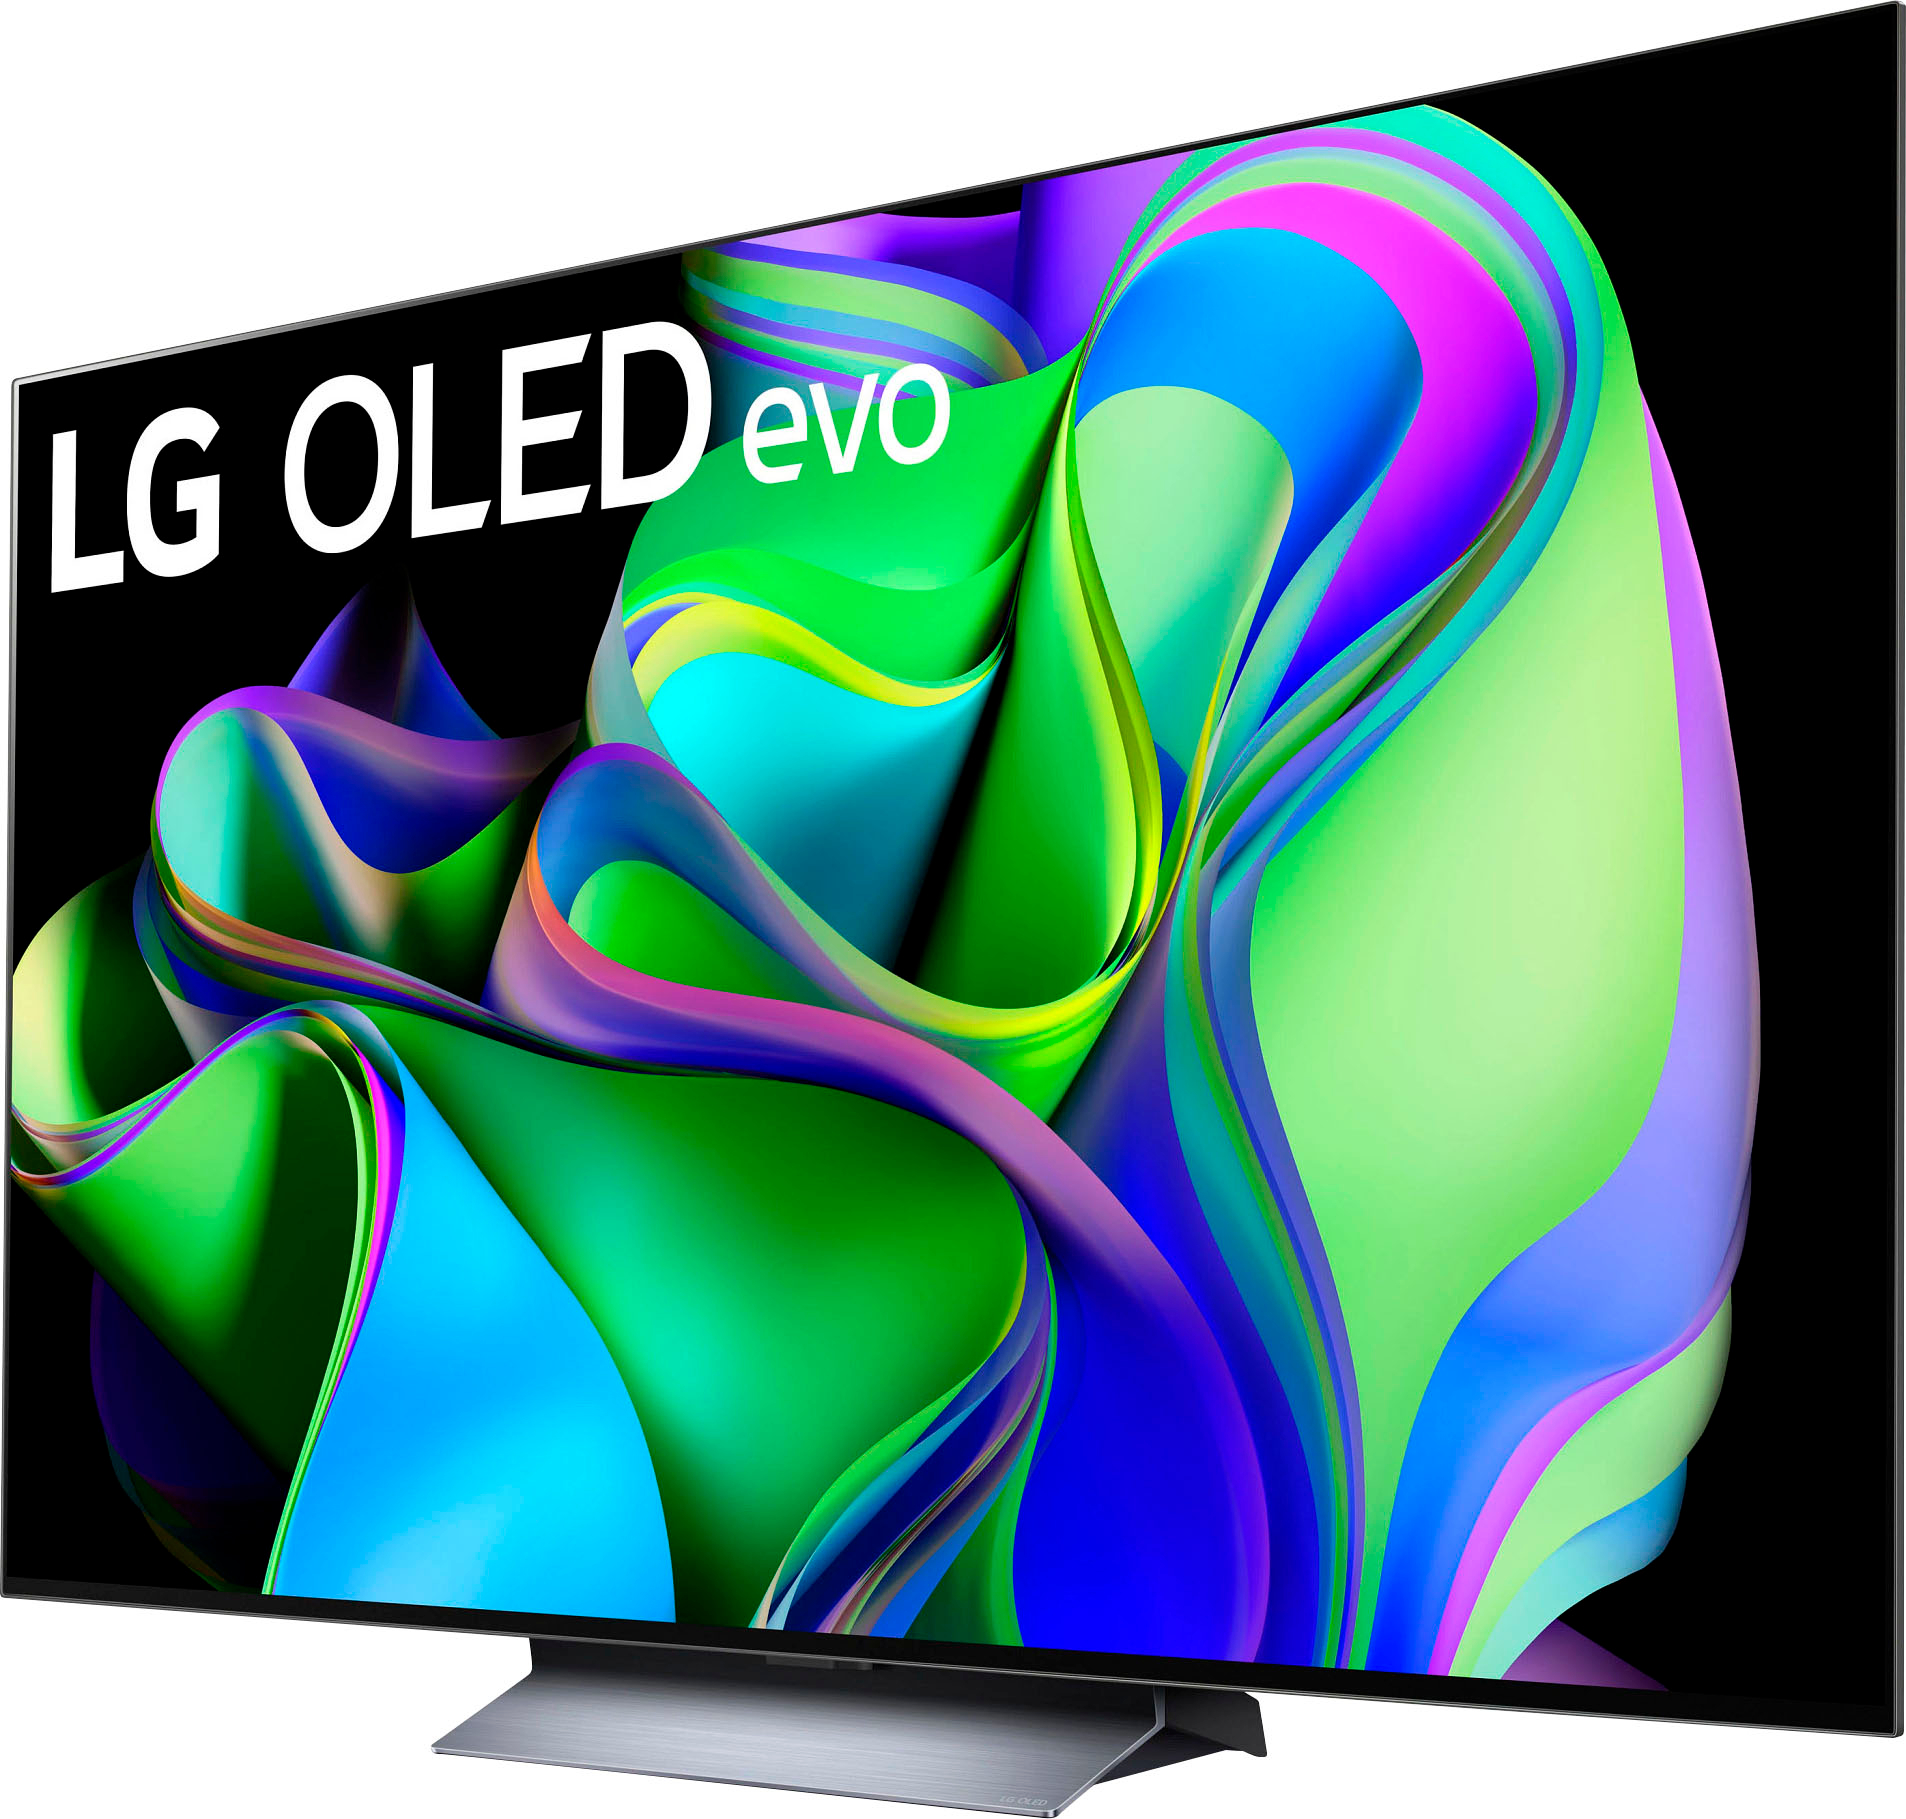 LG 65 Class C3 Series OLED 4K UHD Smart webOS TV OLED65C3PUA - Best Buy